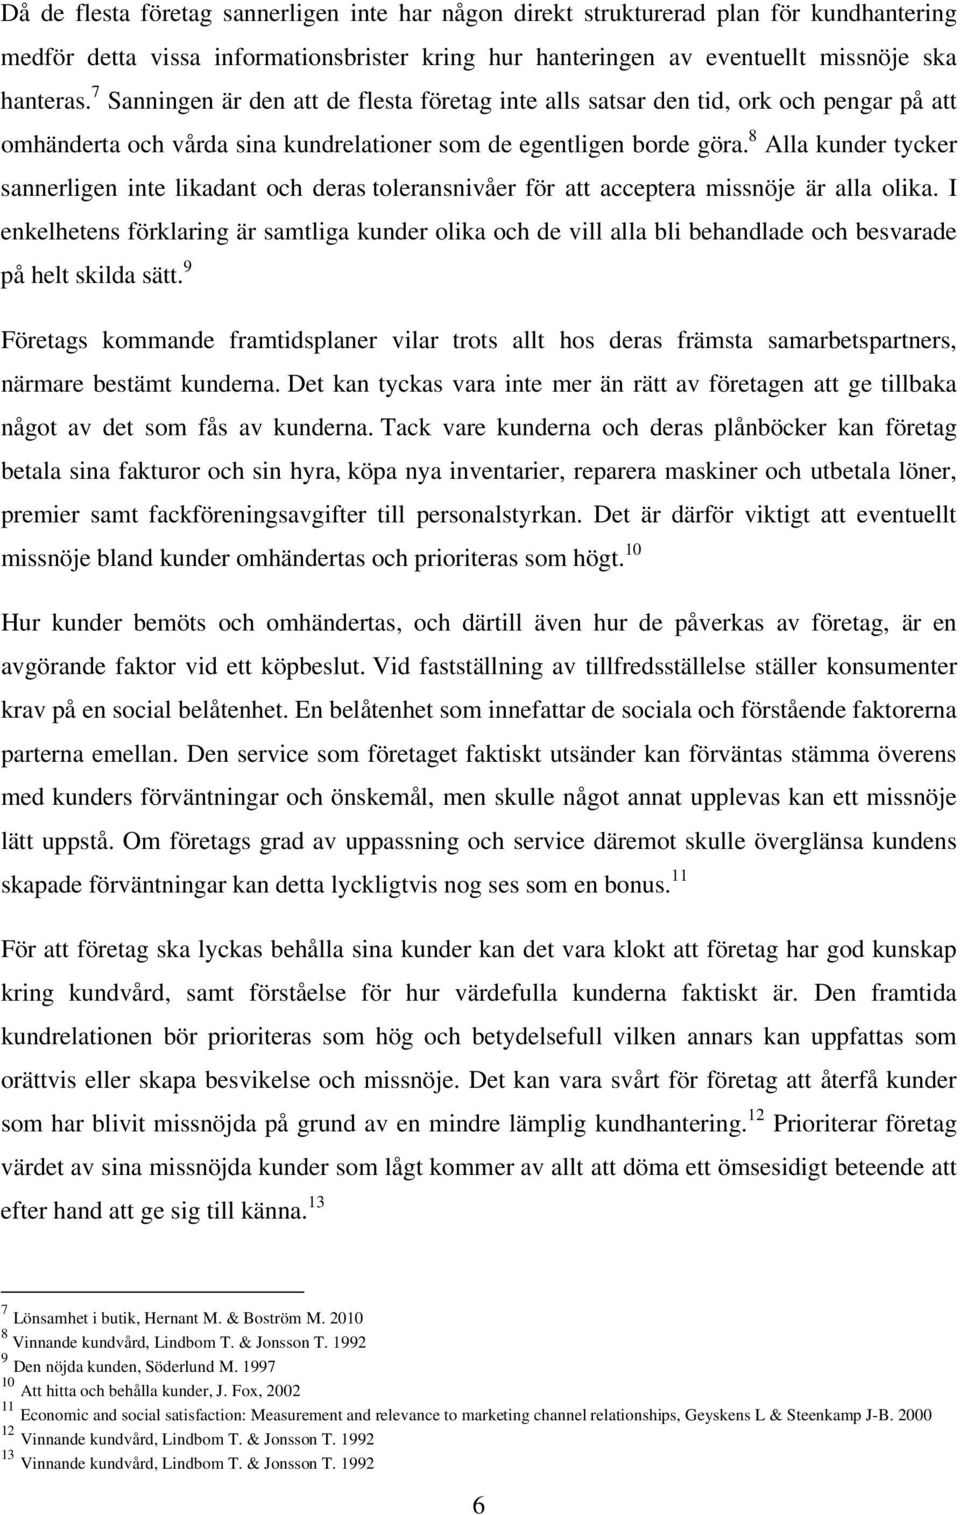 HANTERING AV MISSNÖJDA KUNDER - PDF Gratis nedladdning